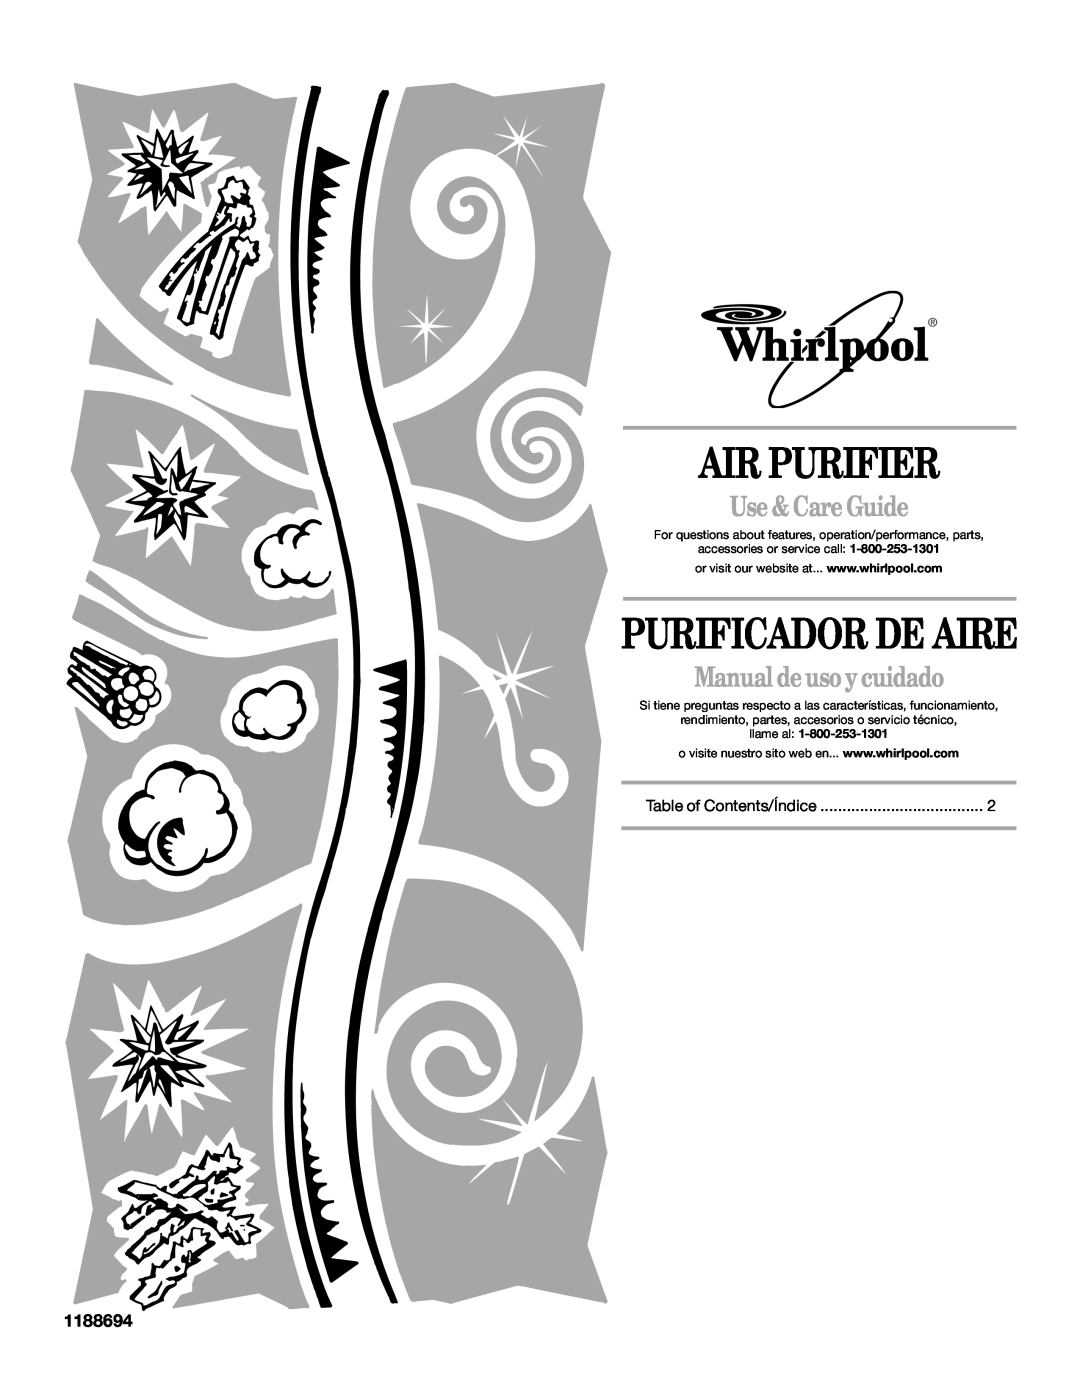 Whirlpool 1188694 manual Air Purifier, Purificador De Aire, Use & Care Guide, Manual de uso ycuidado, llame al 